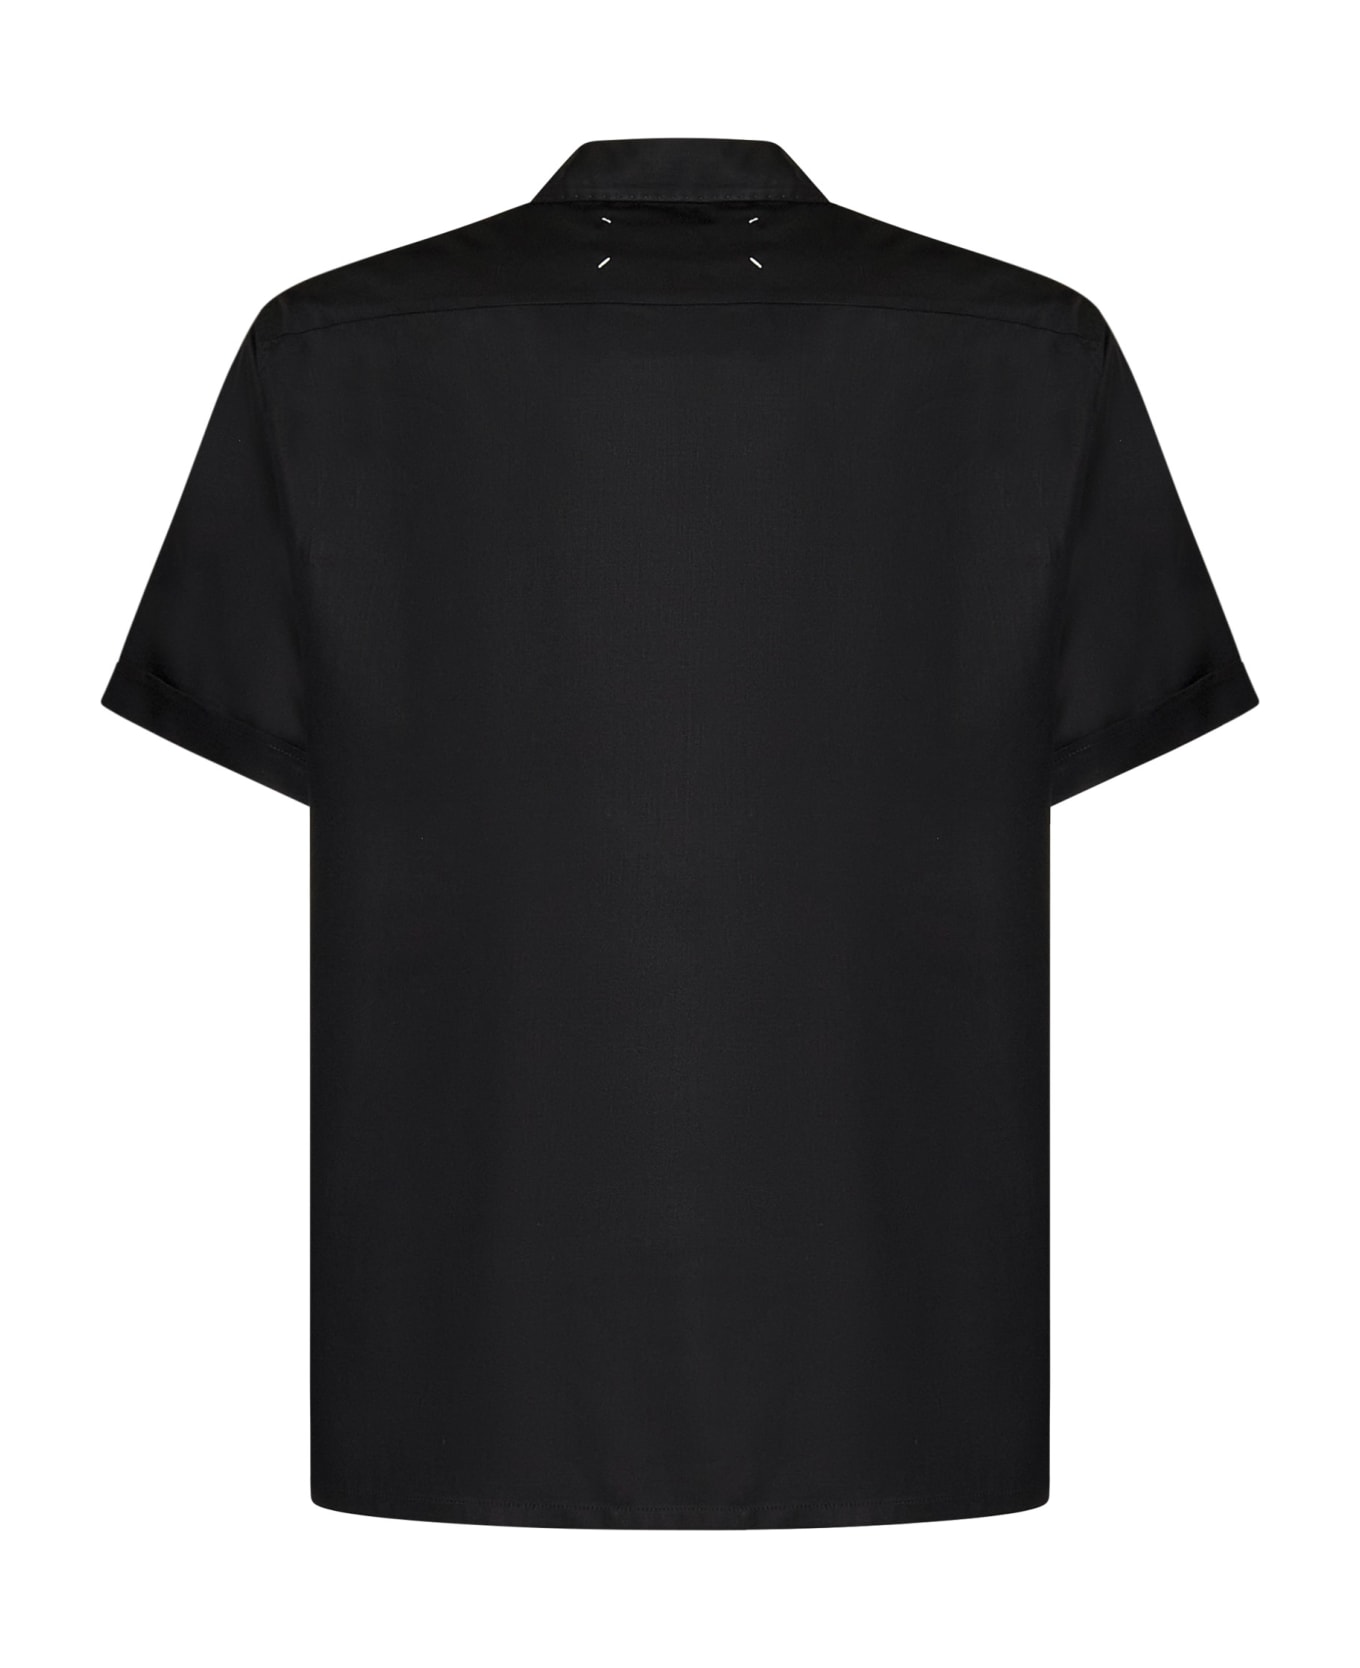 Maison Margiela C Shirt - Black